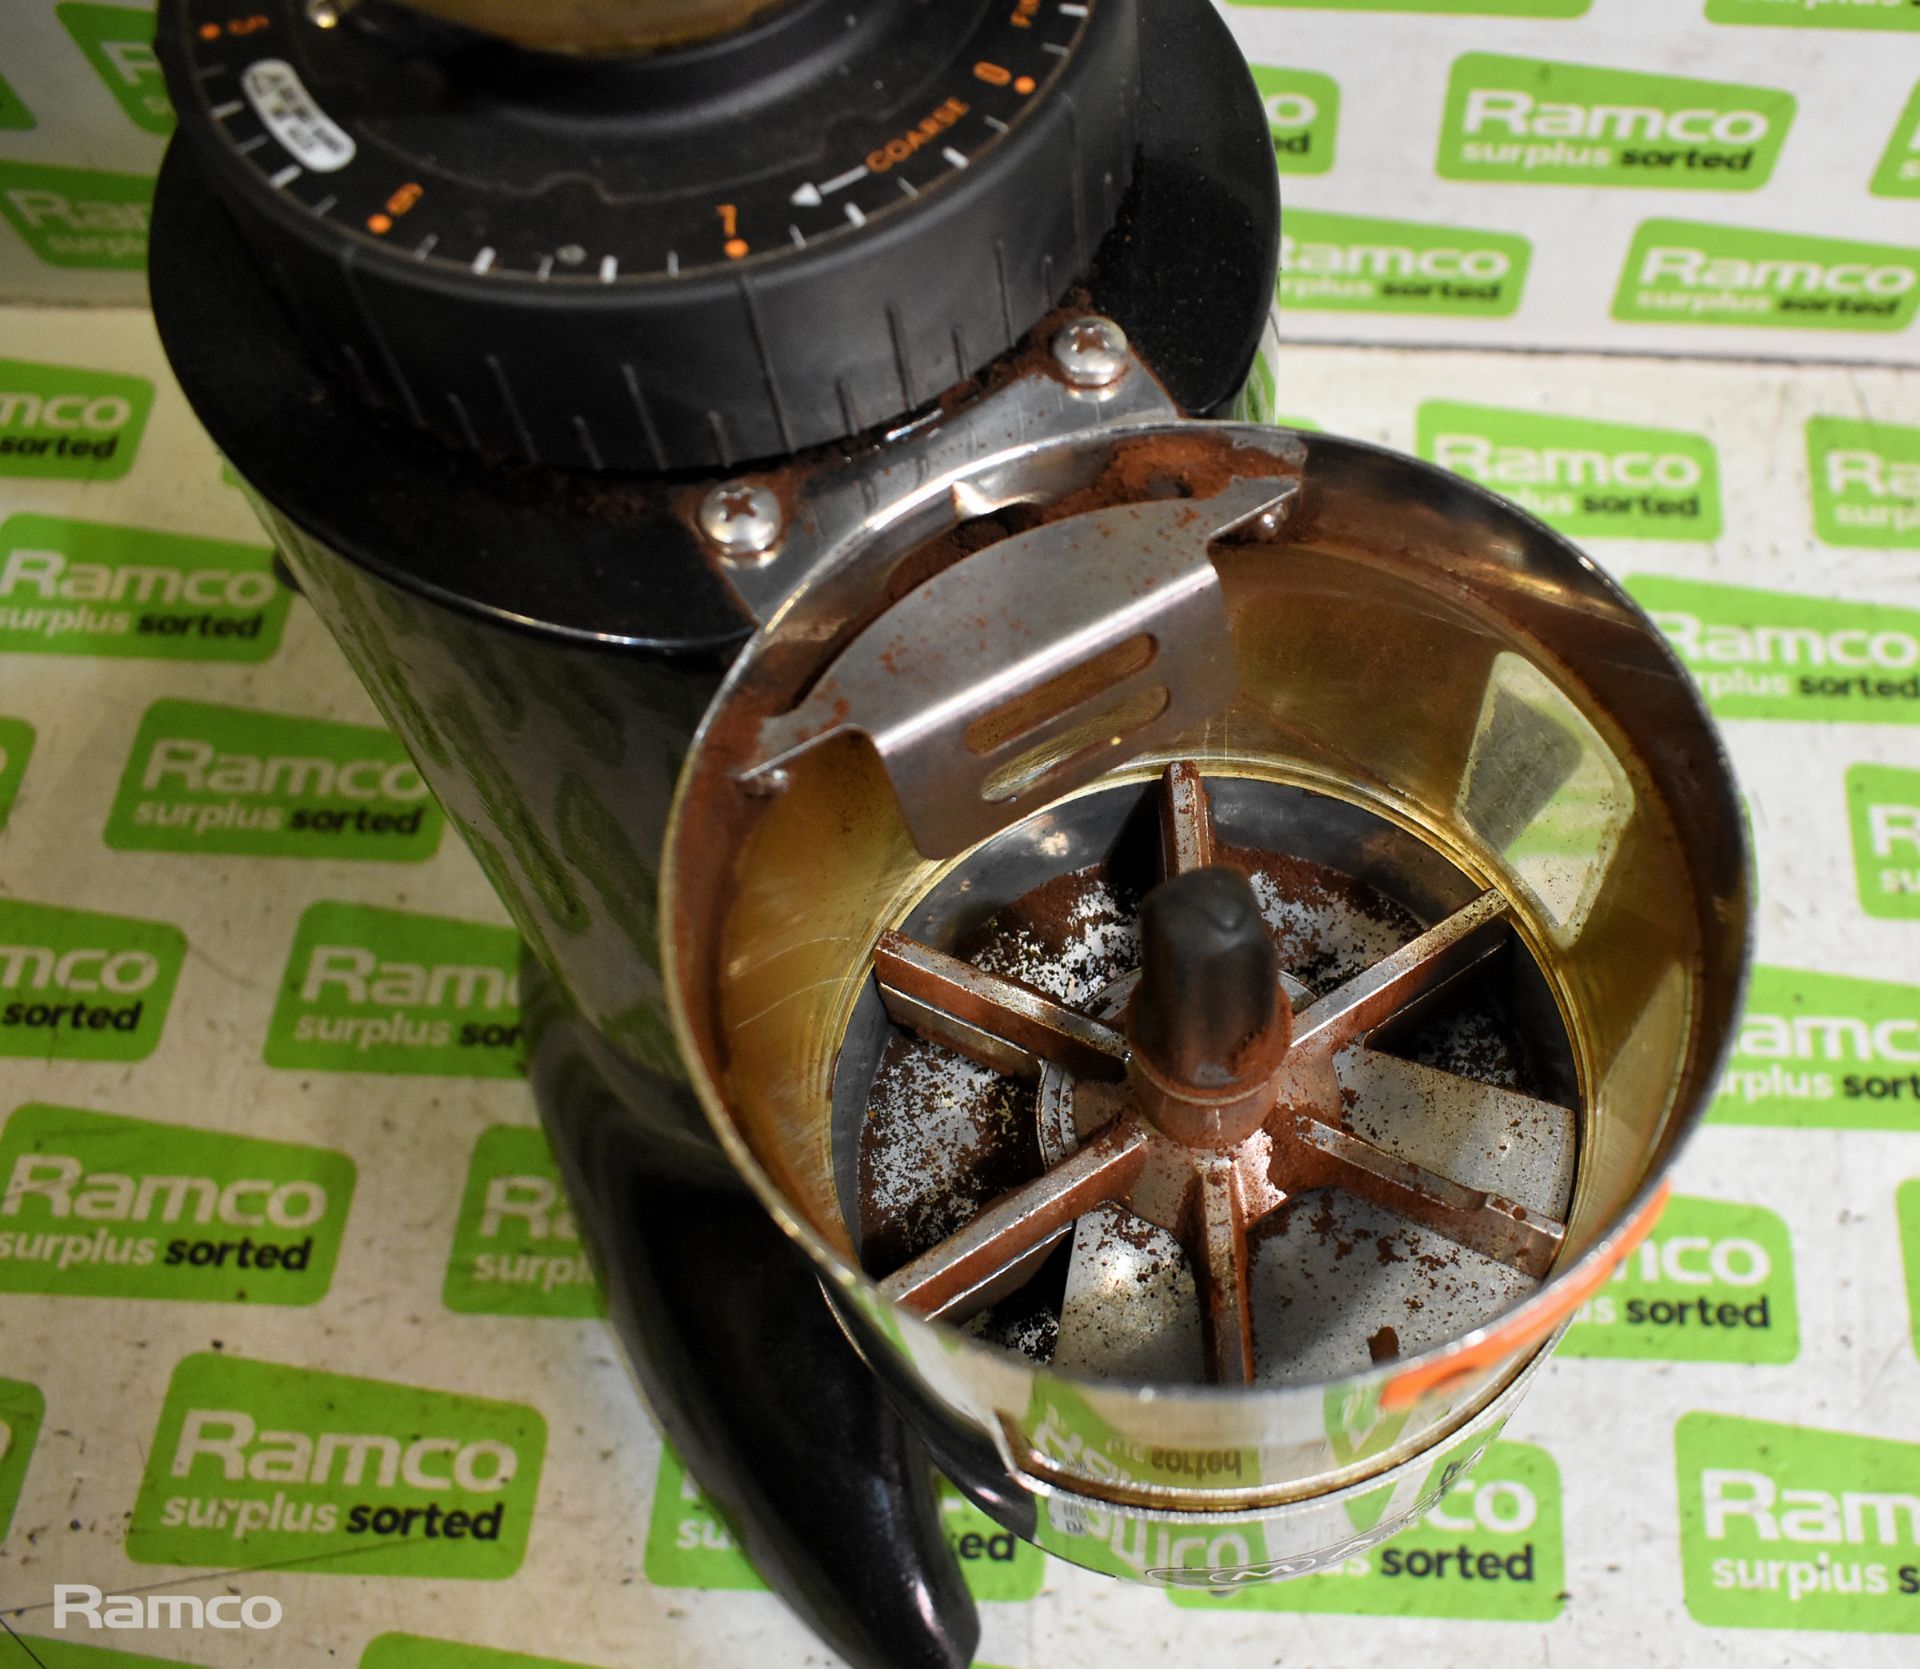 Ceado E6X espresso coffee grinder & Ceado E6X espresso coffee grinder body - Image 10 of 11